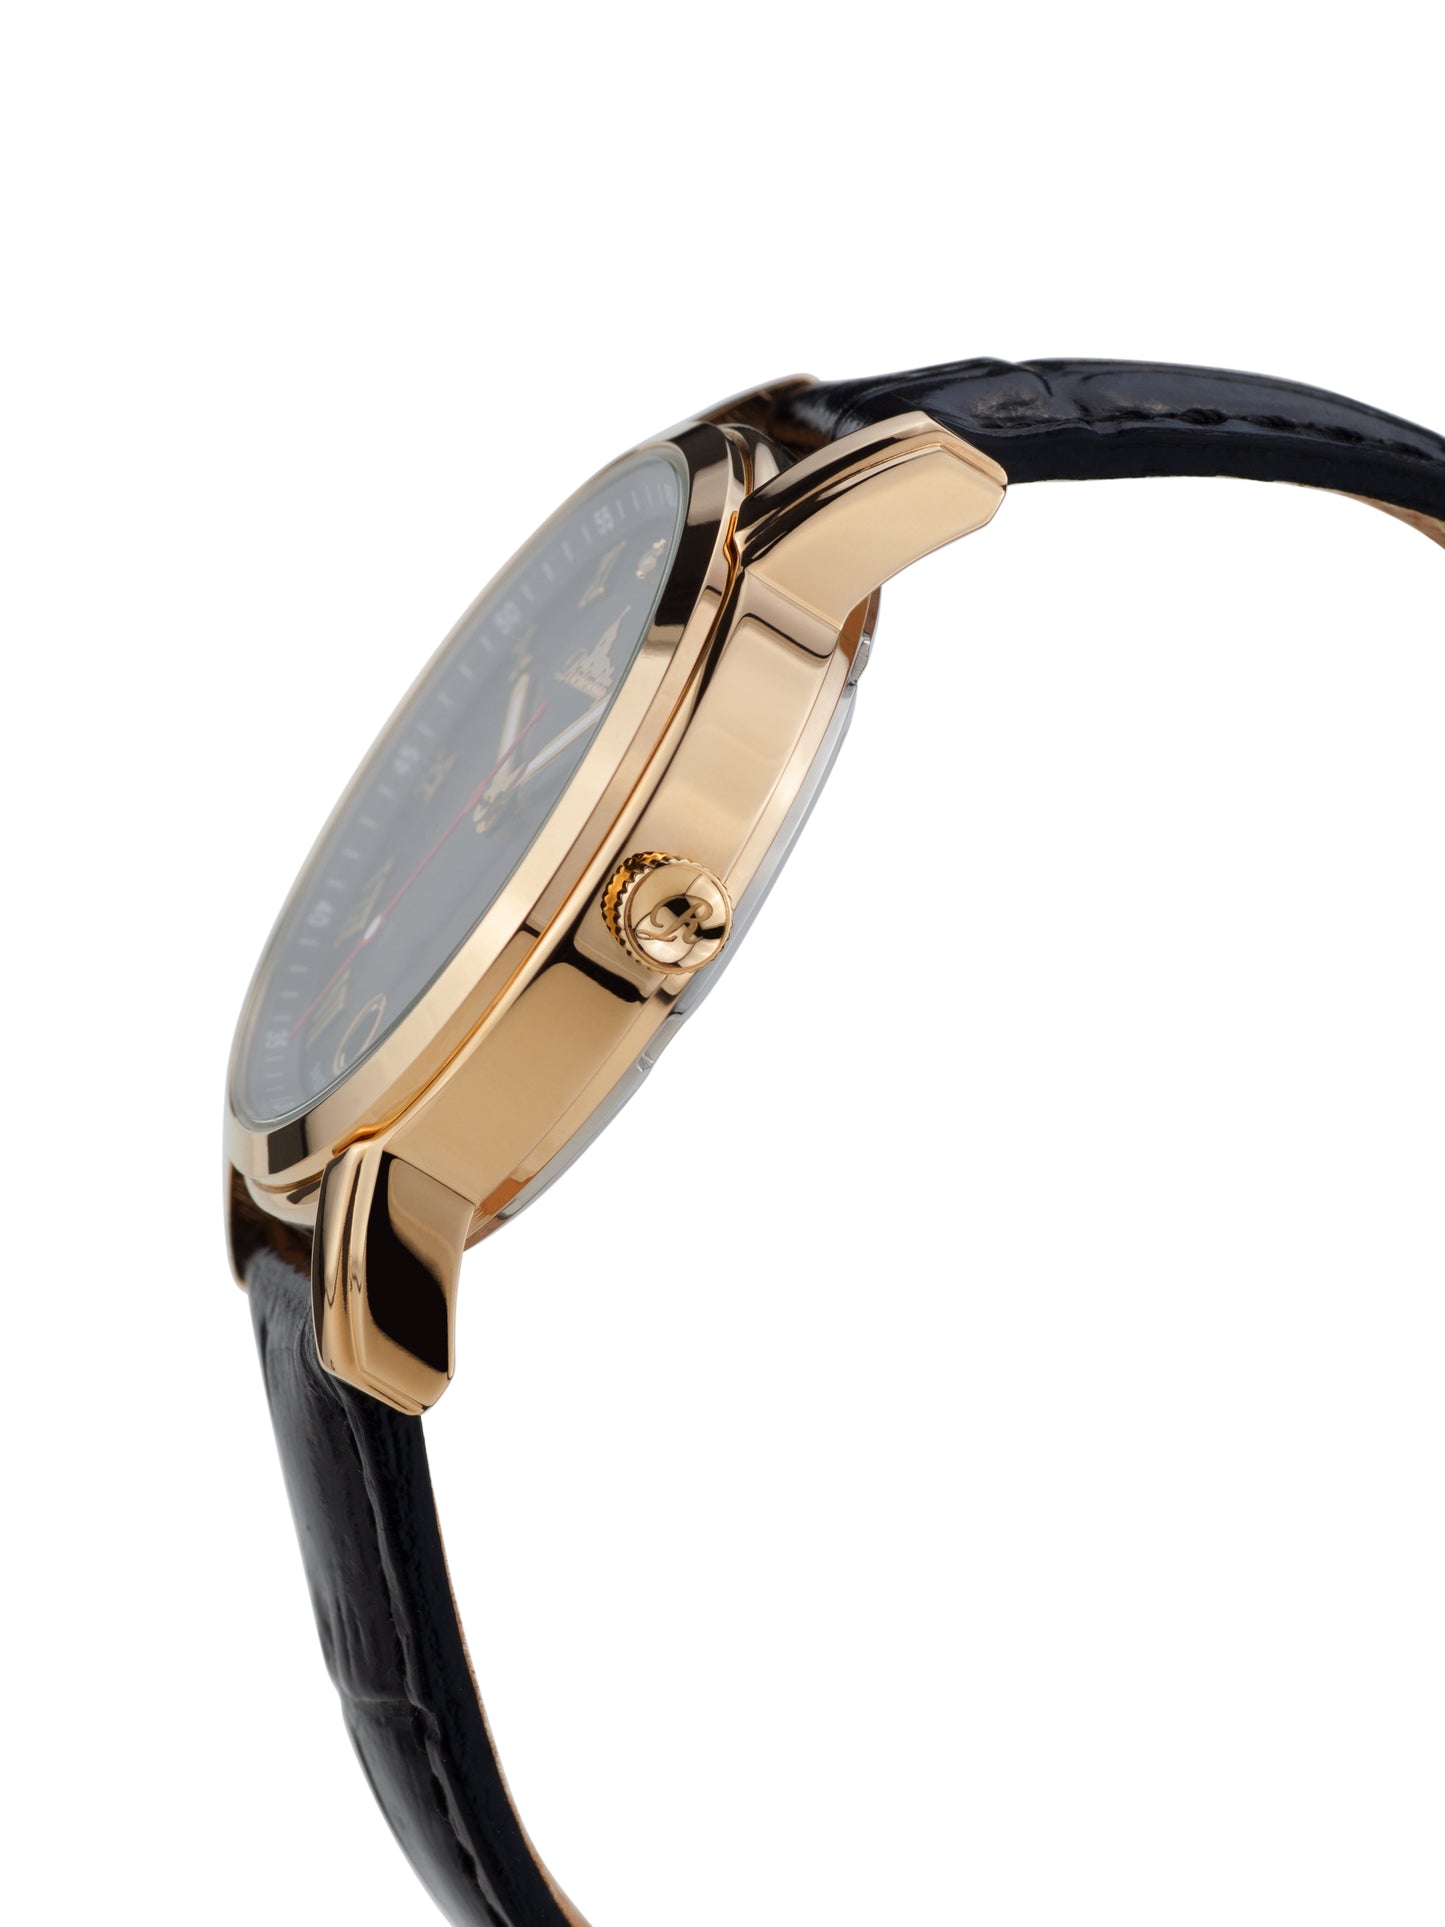 Automatic watches — Gesa — Richtenburg — gold IP black